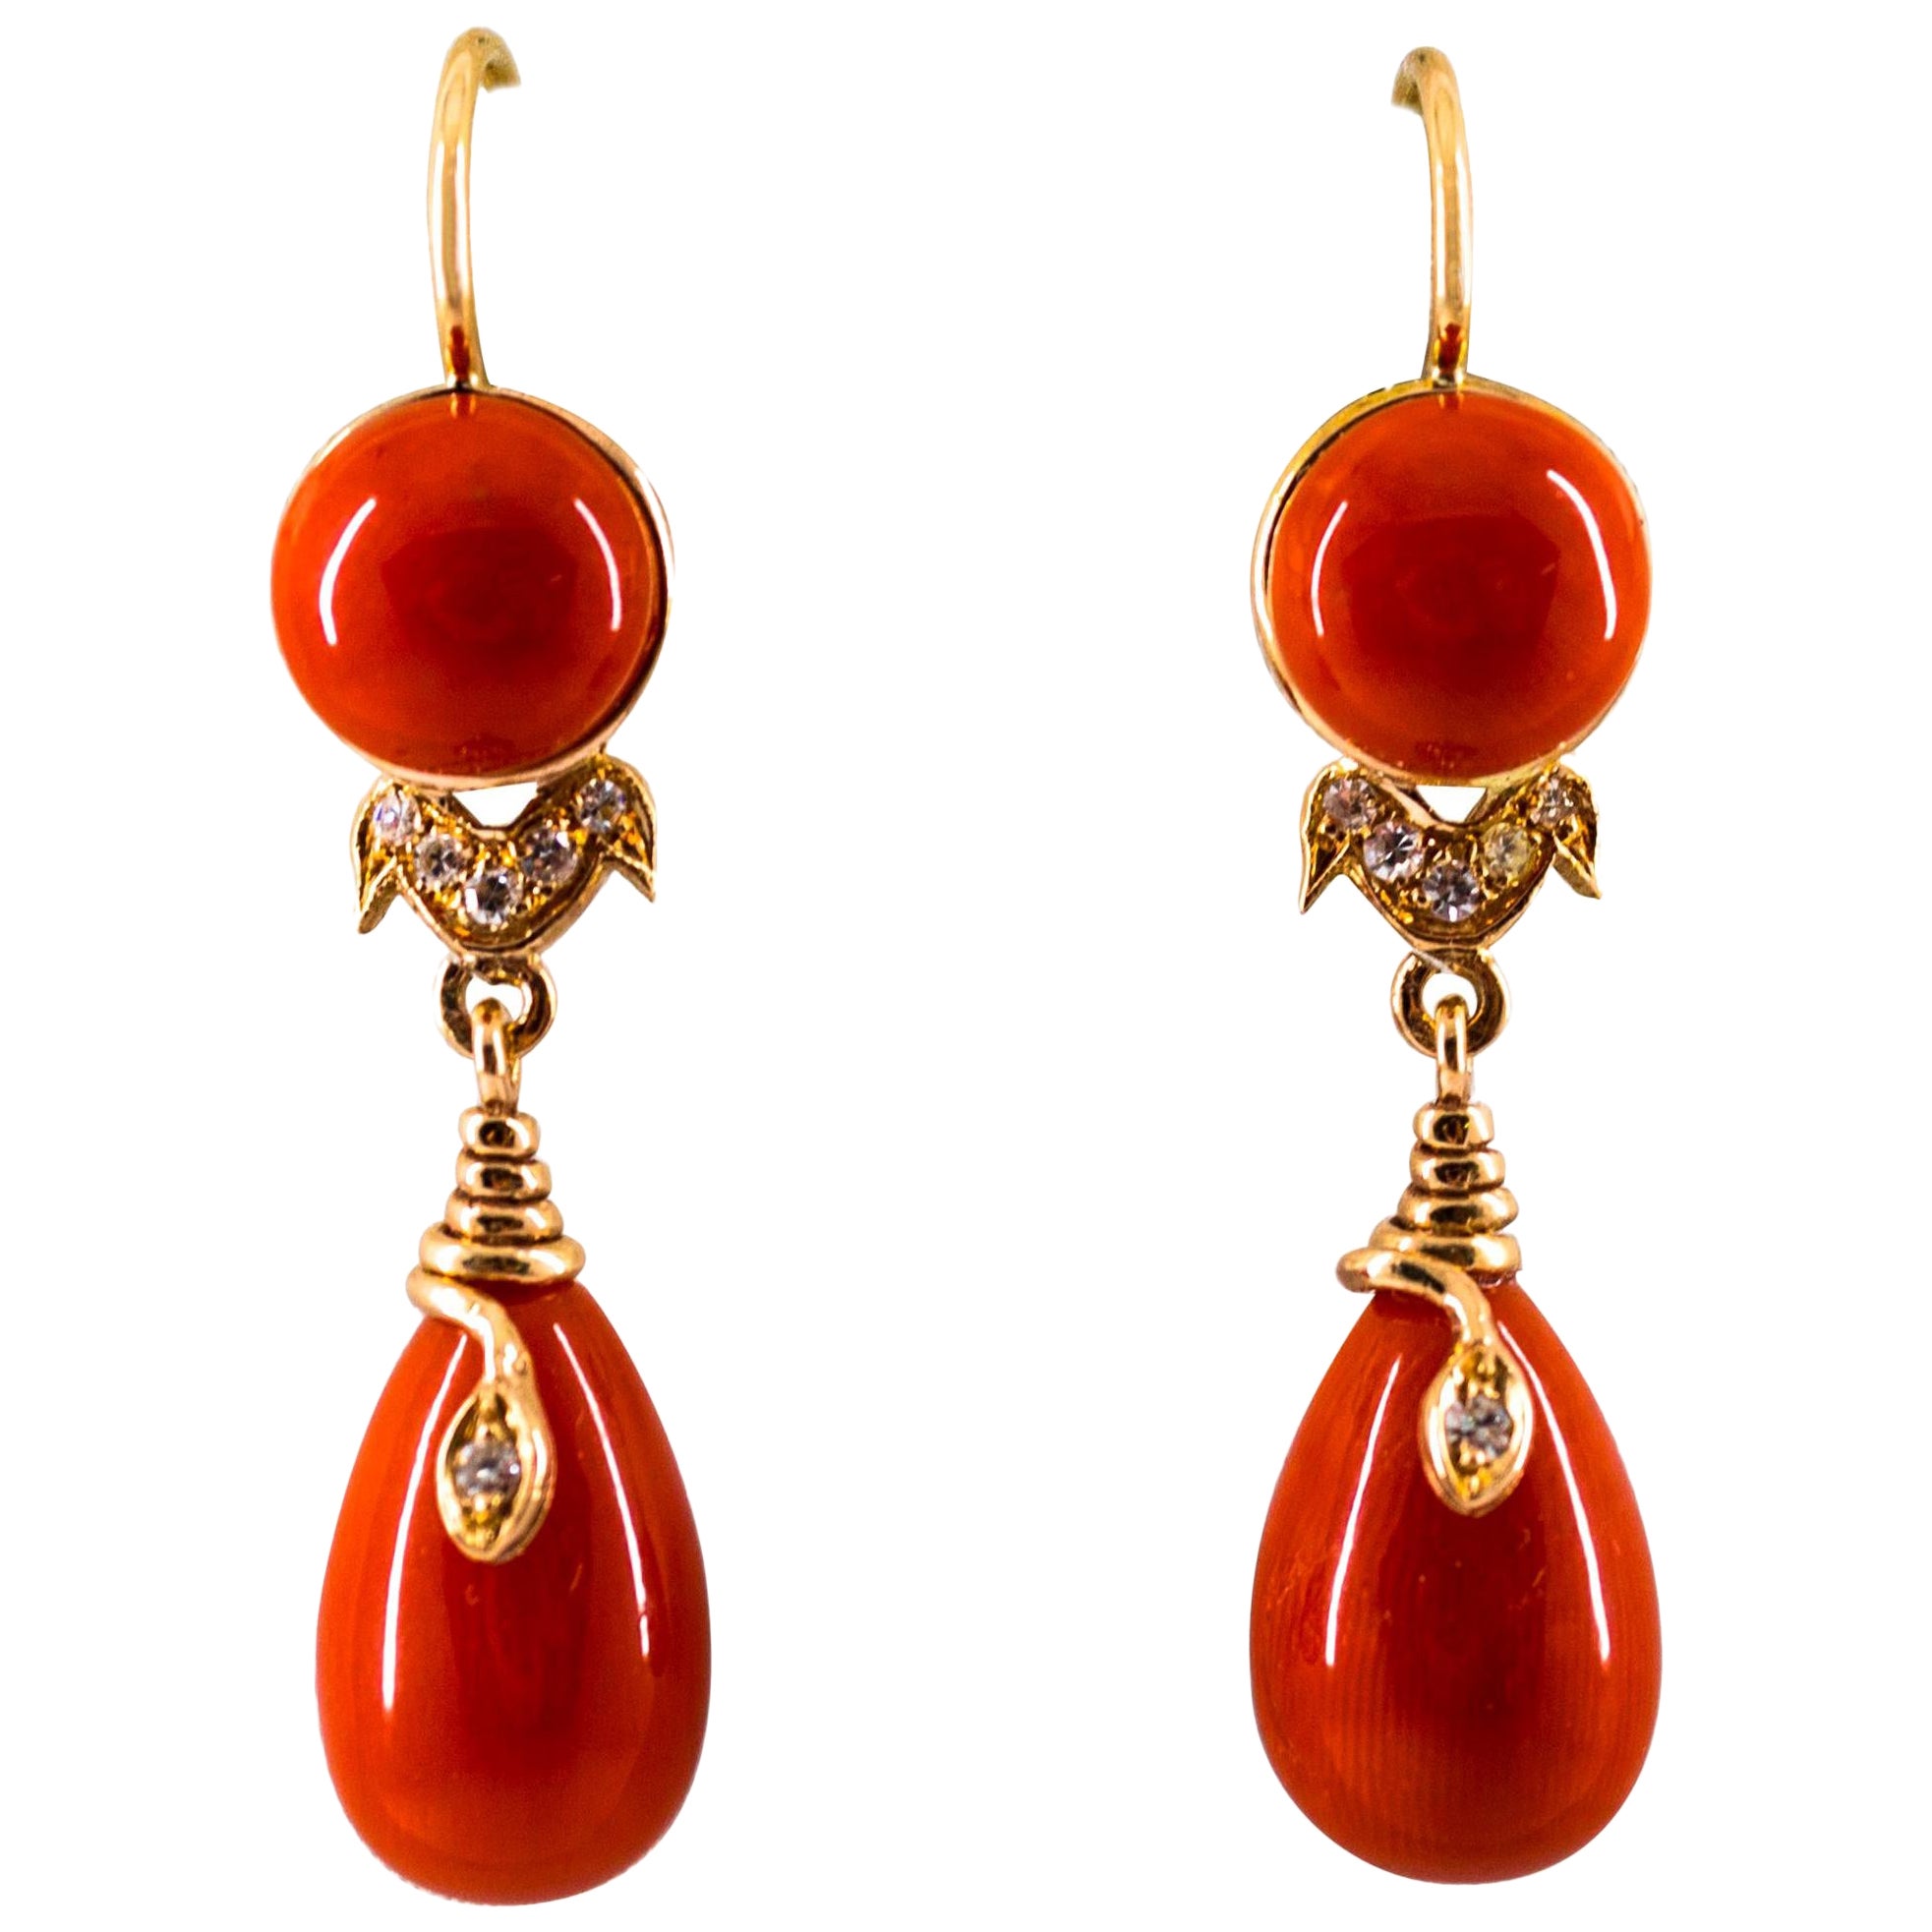 Jugendstil-Ohrringe „Schlangen“ aus Gelbgold mit mediterraner roter Koralle und weißen Diamanten